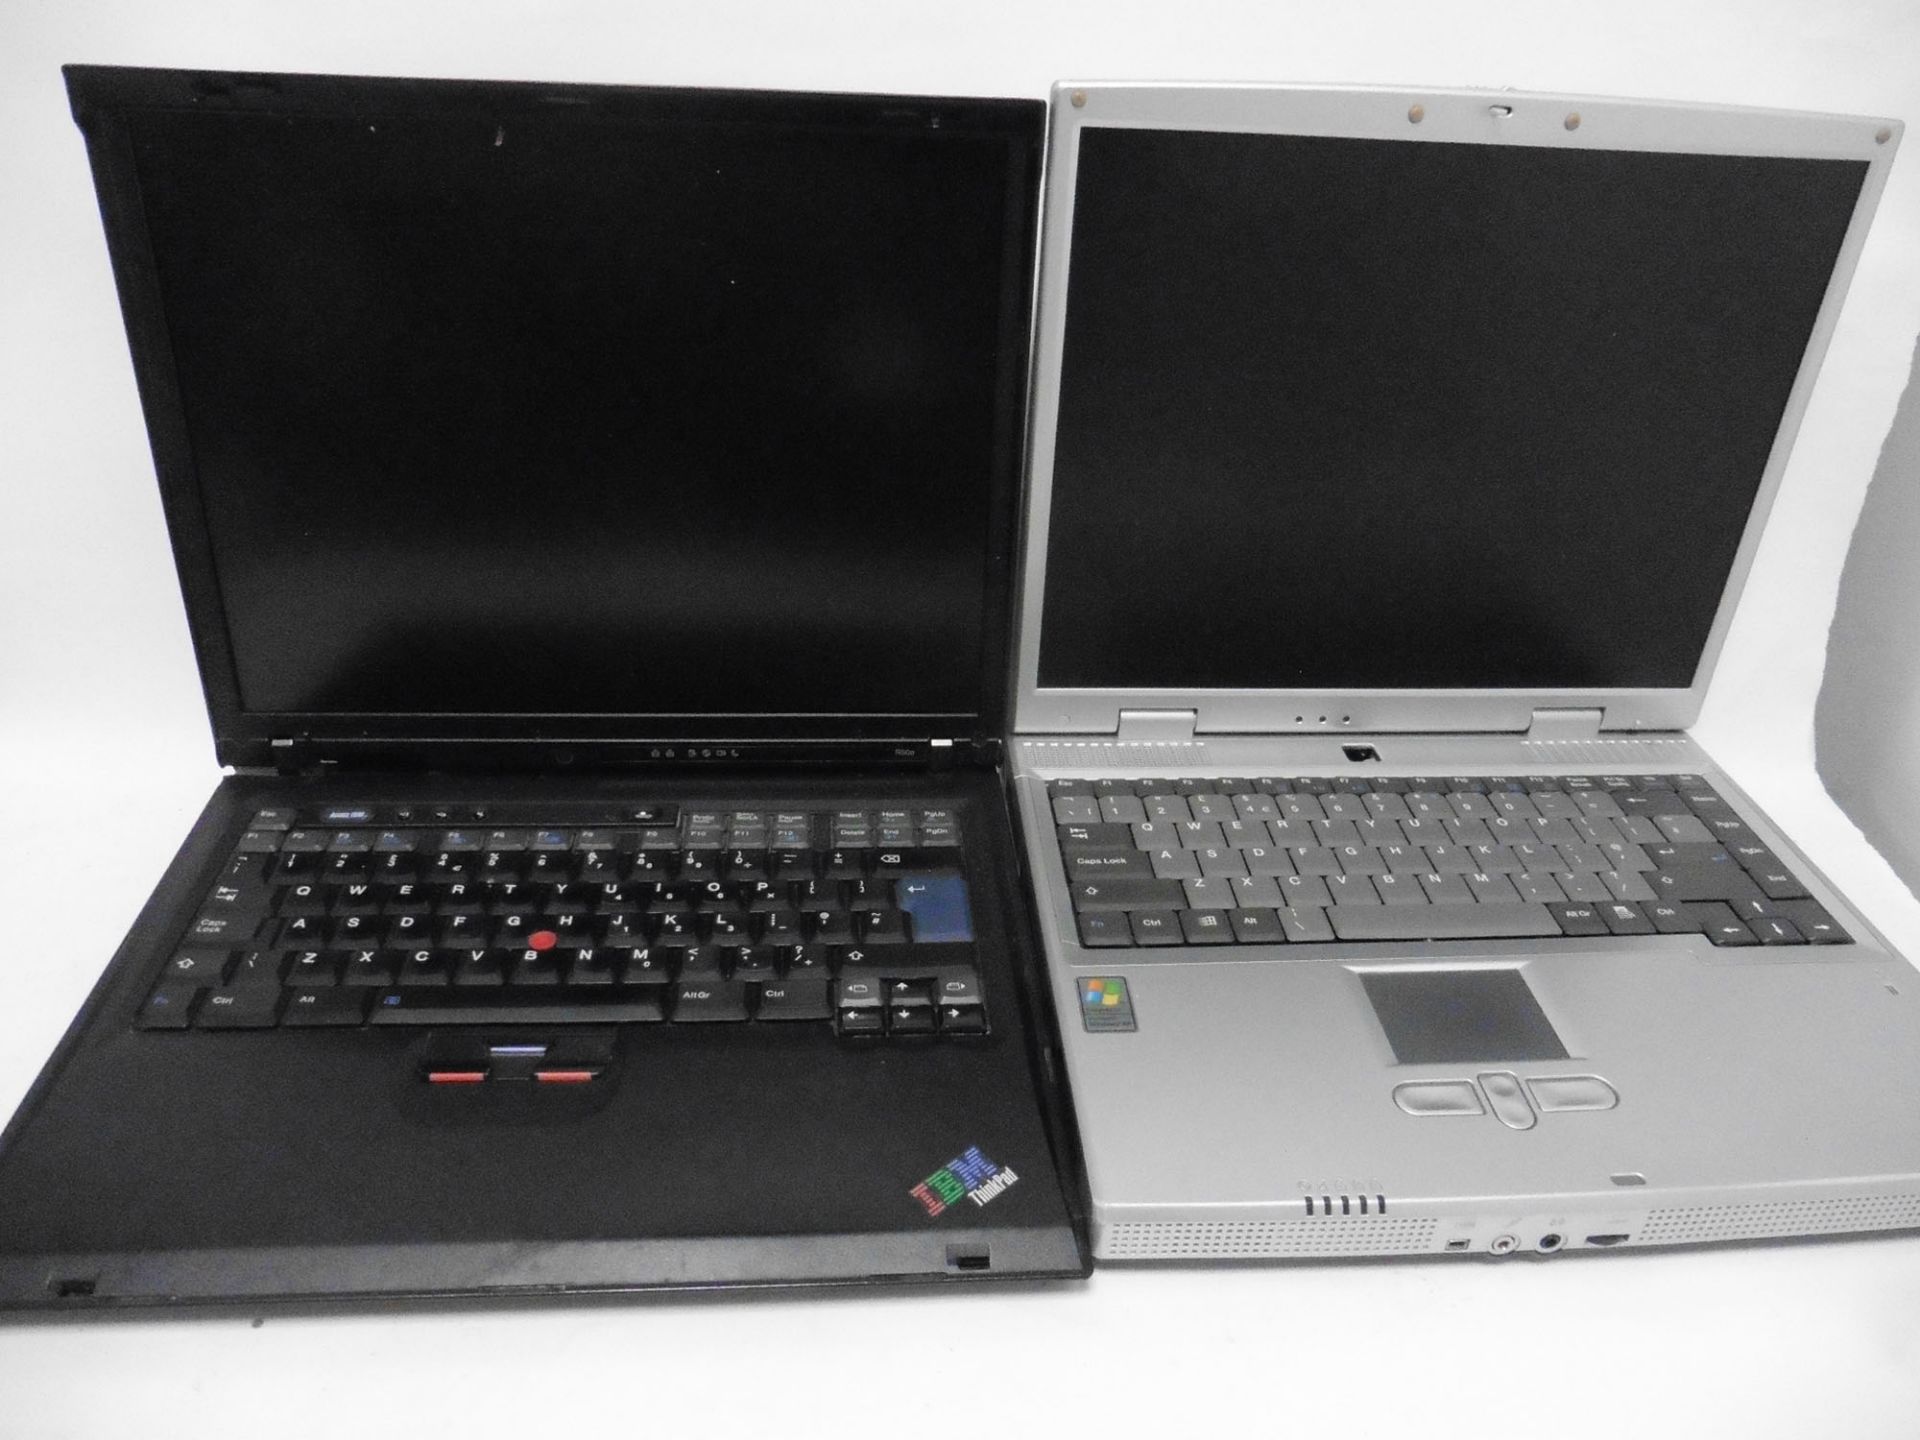 2 laptops, 1x IBM Thinkpad R50e (XP vintage) no Hard drive & 1x Time 8375 (XP vintage) no Hard drive - Image 2 of 2